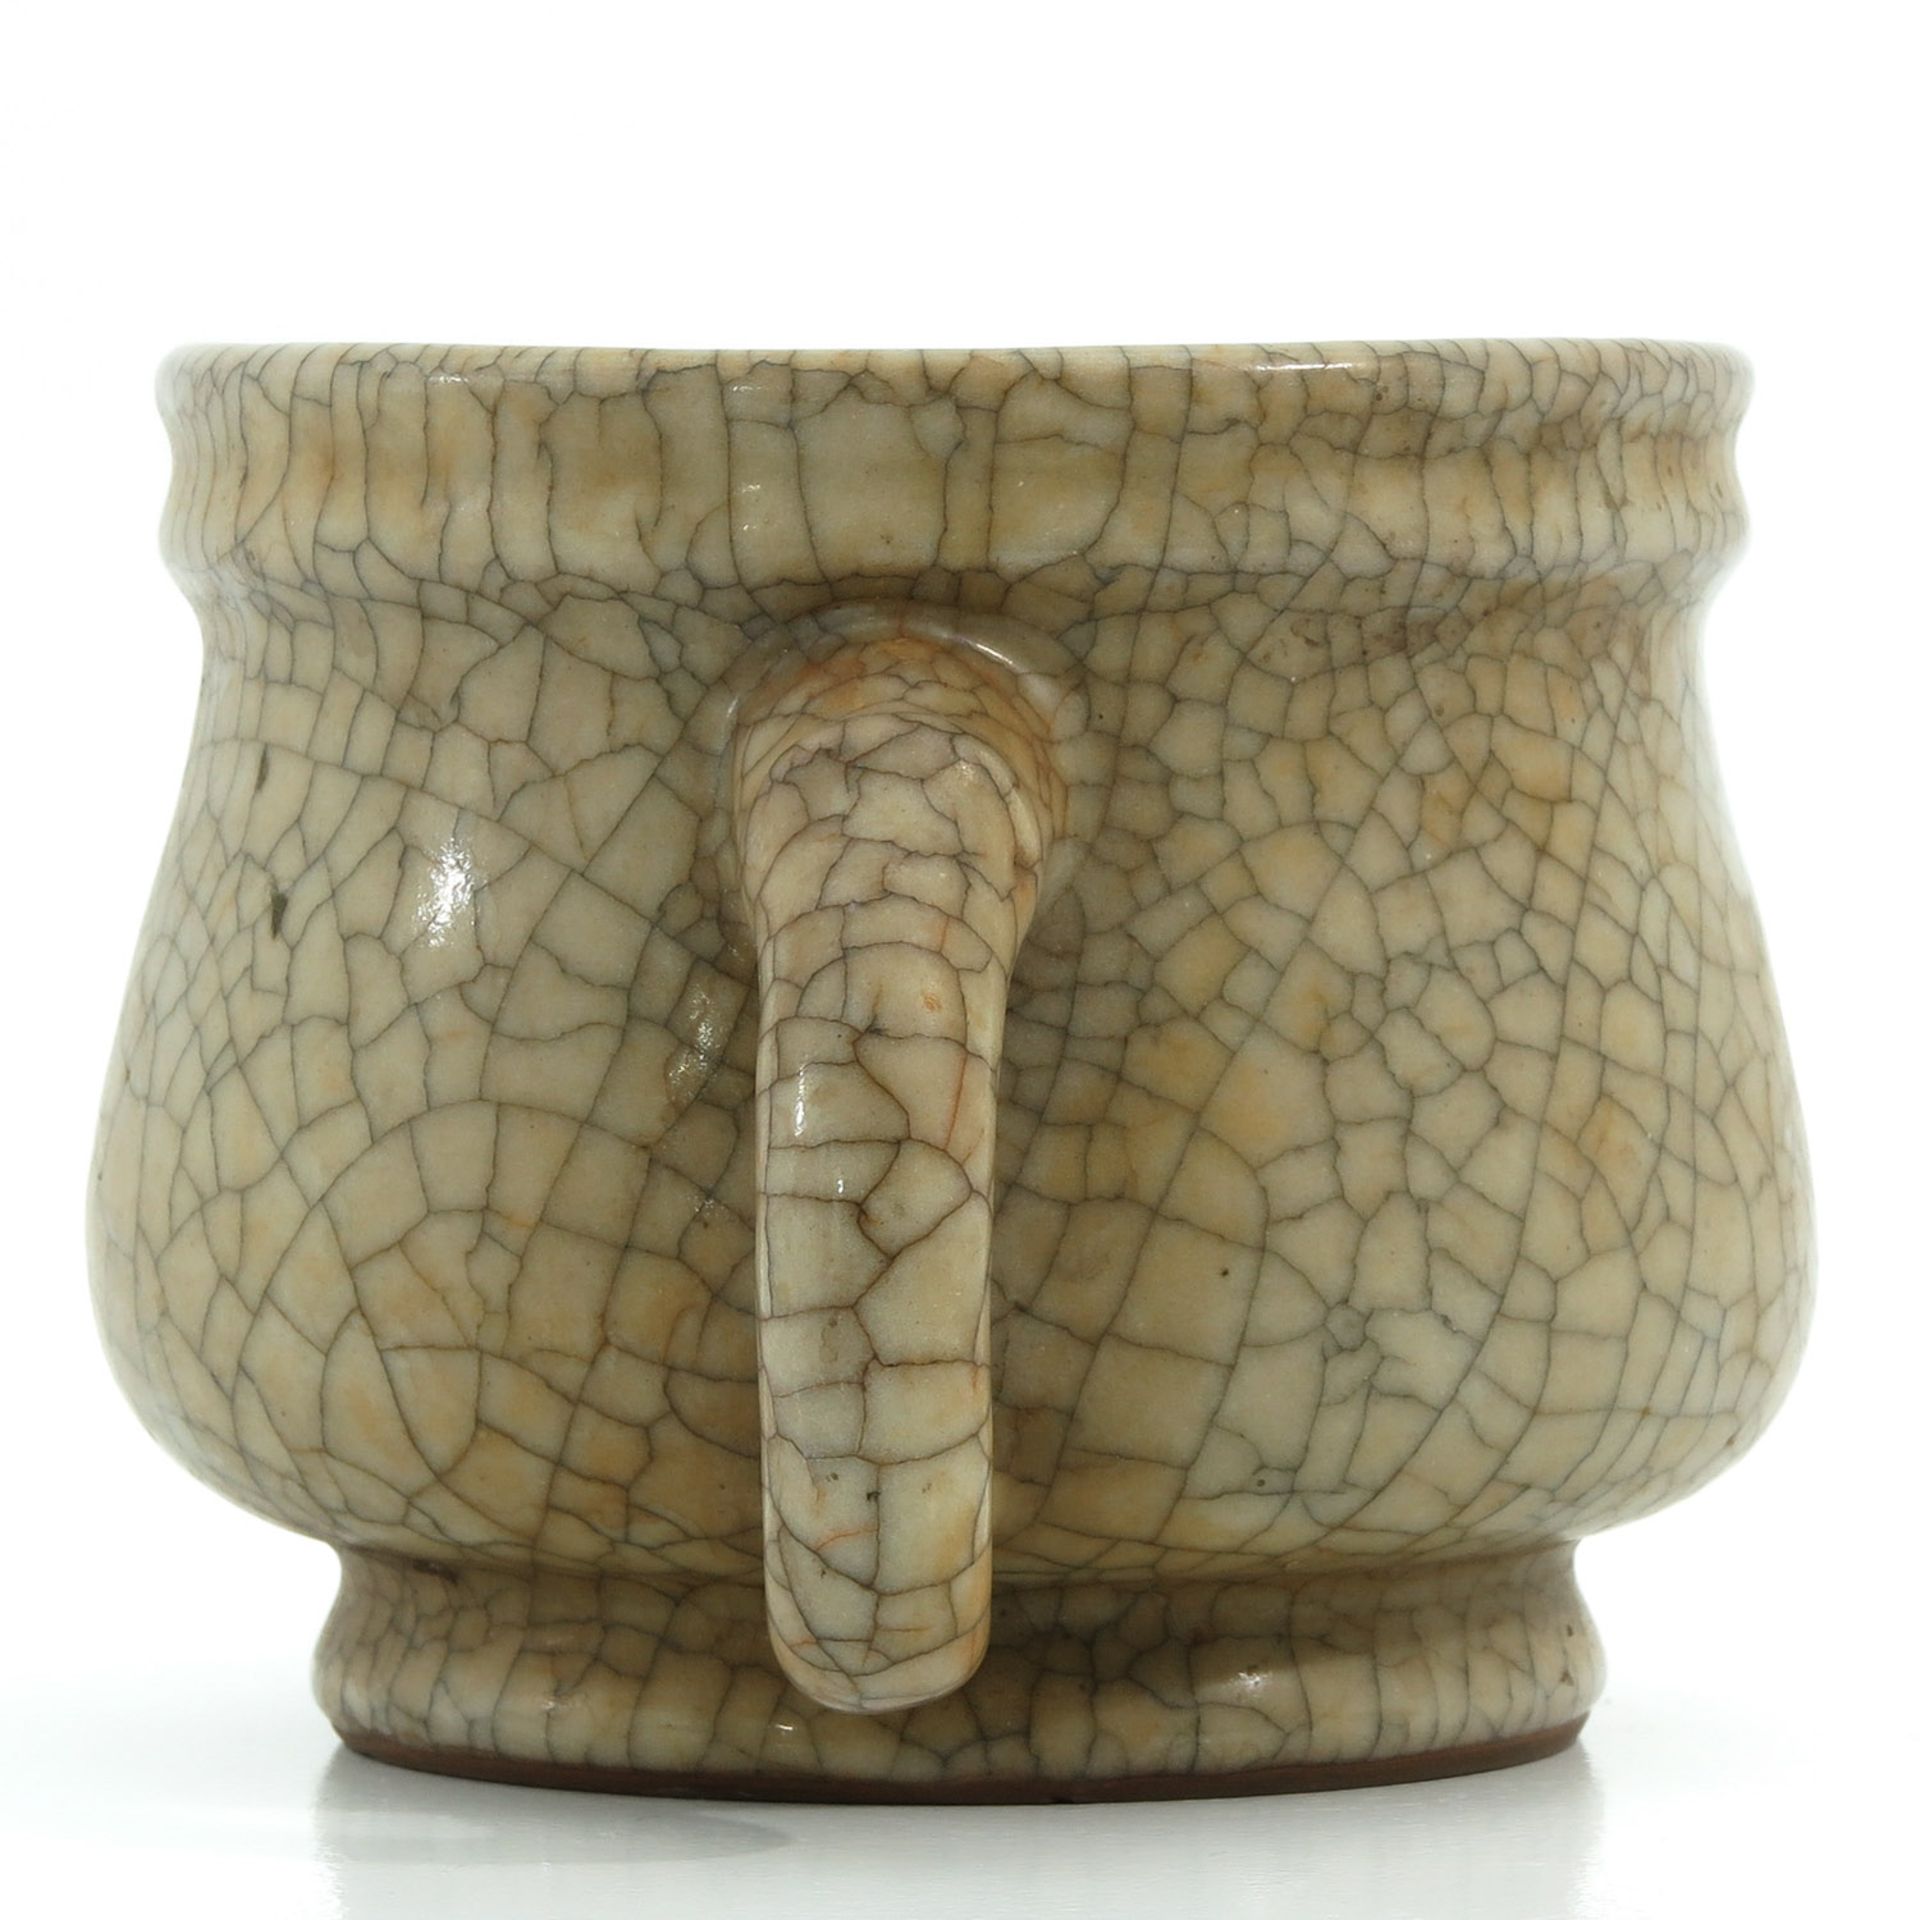 A Crackle Decor Vase with Handles - Bild 2 aus 9